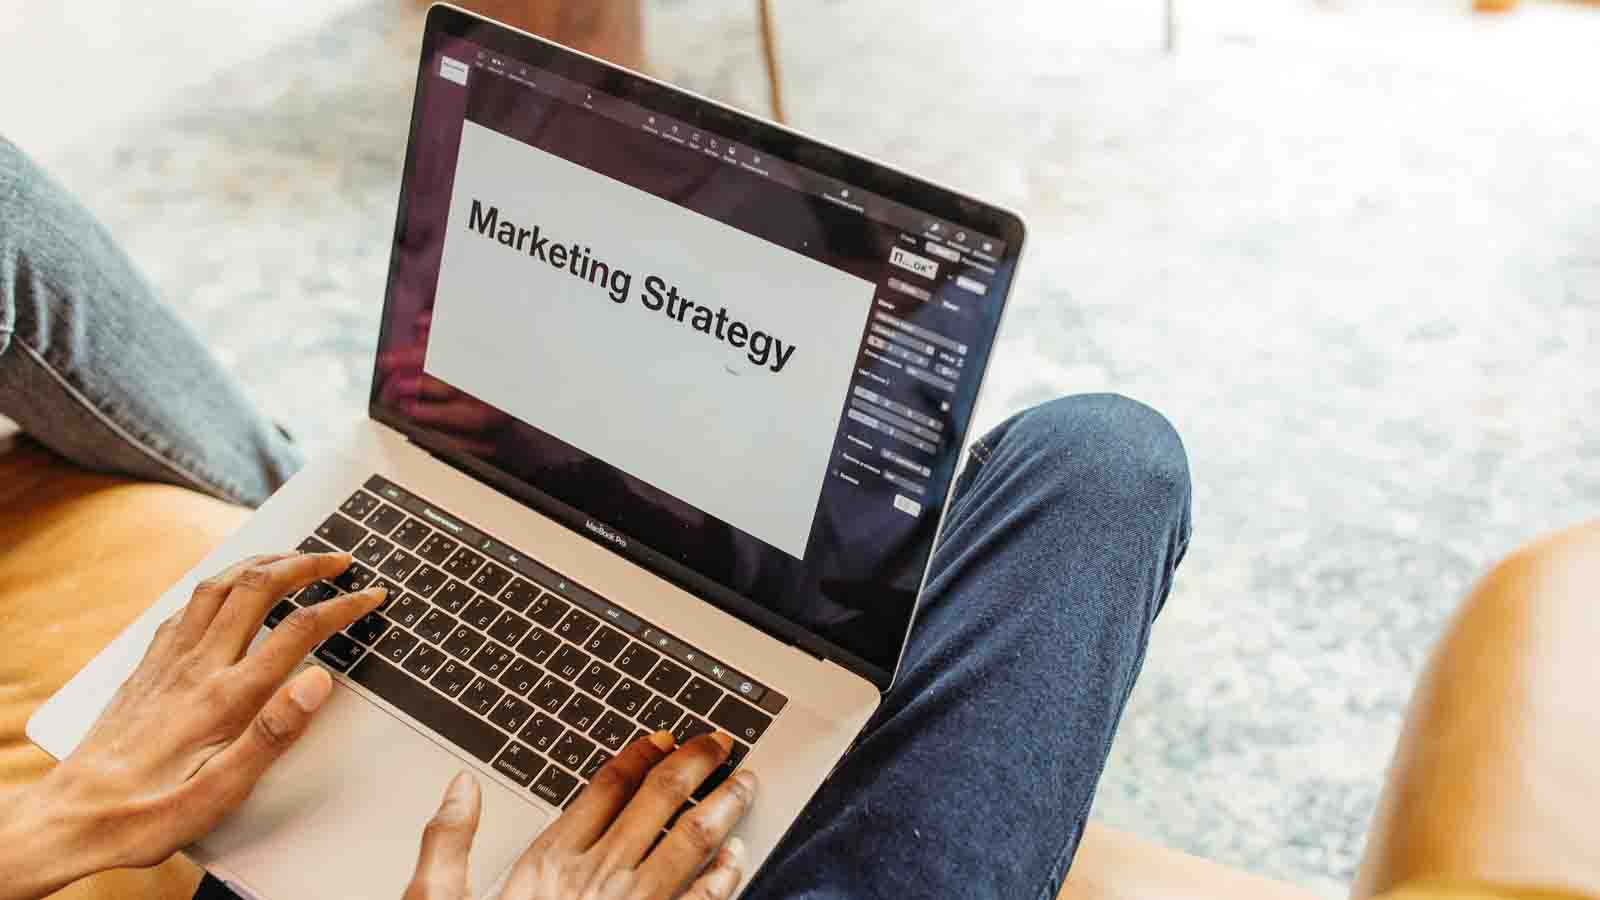 marketing strategy on a laptop